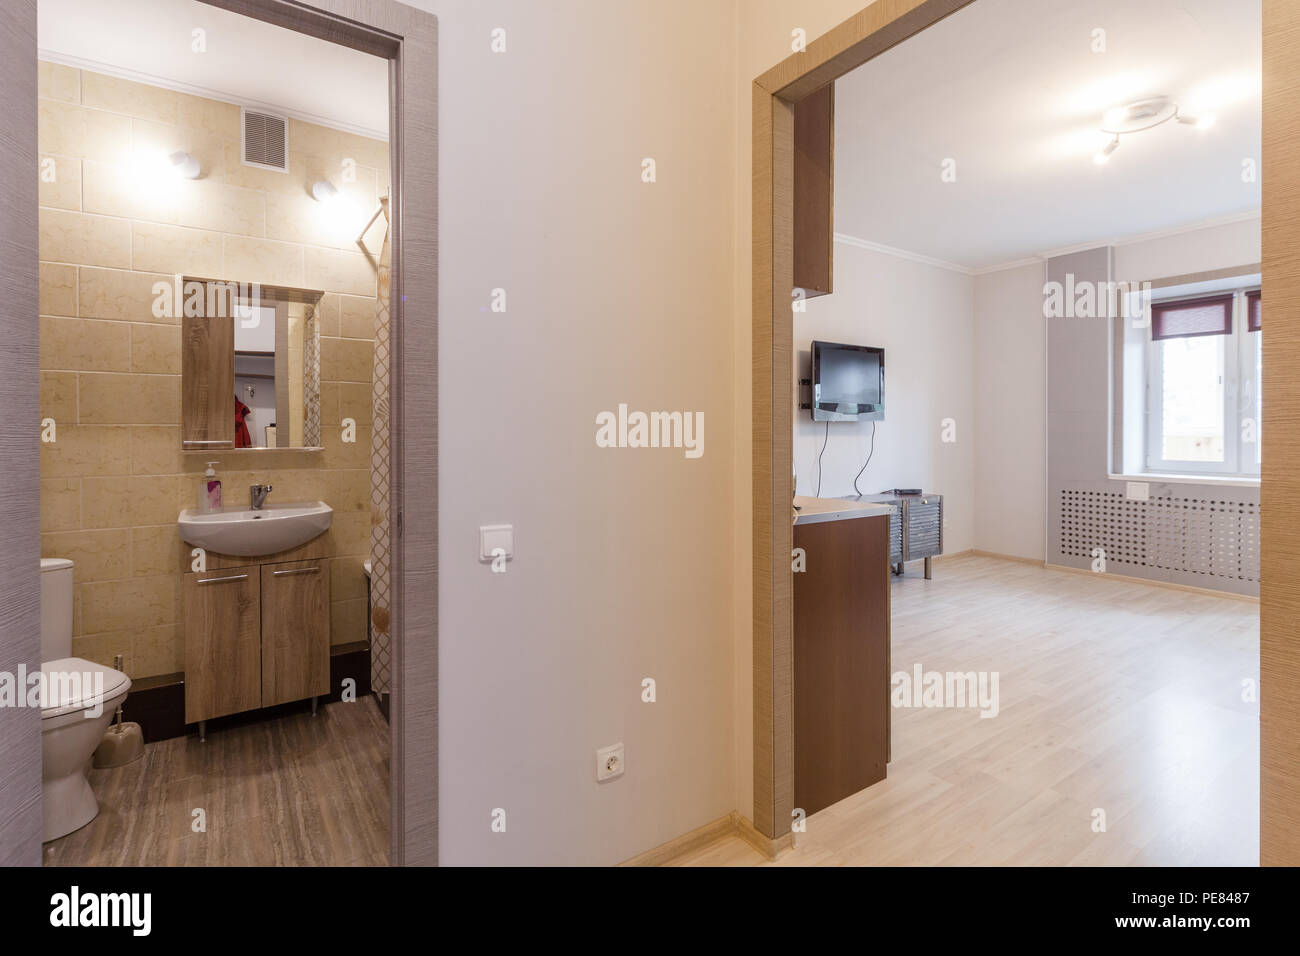 Piccolo e leggero studio apartment interior Foto Stock